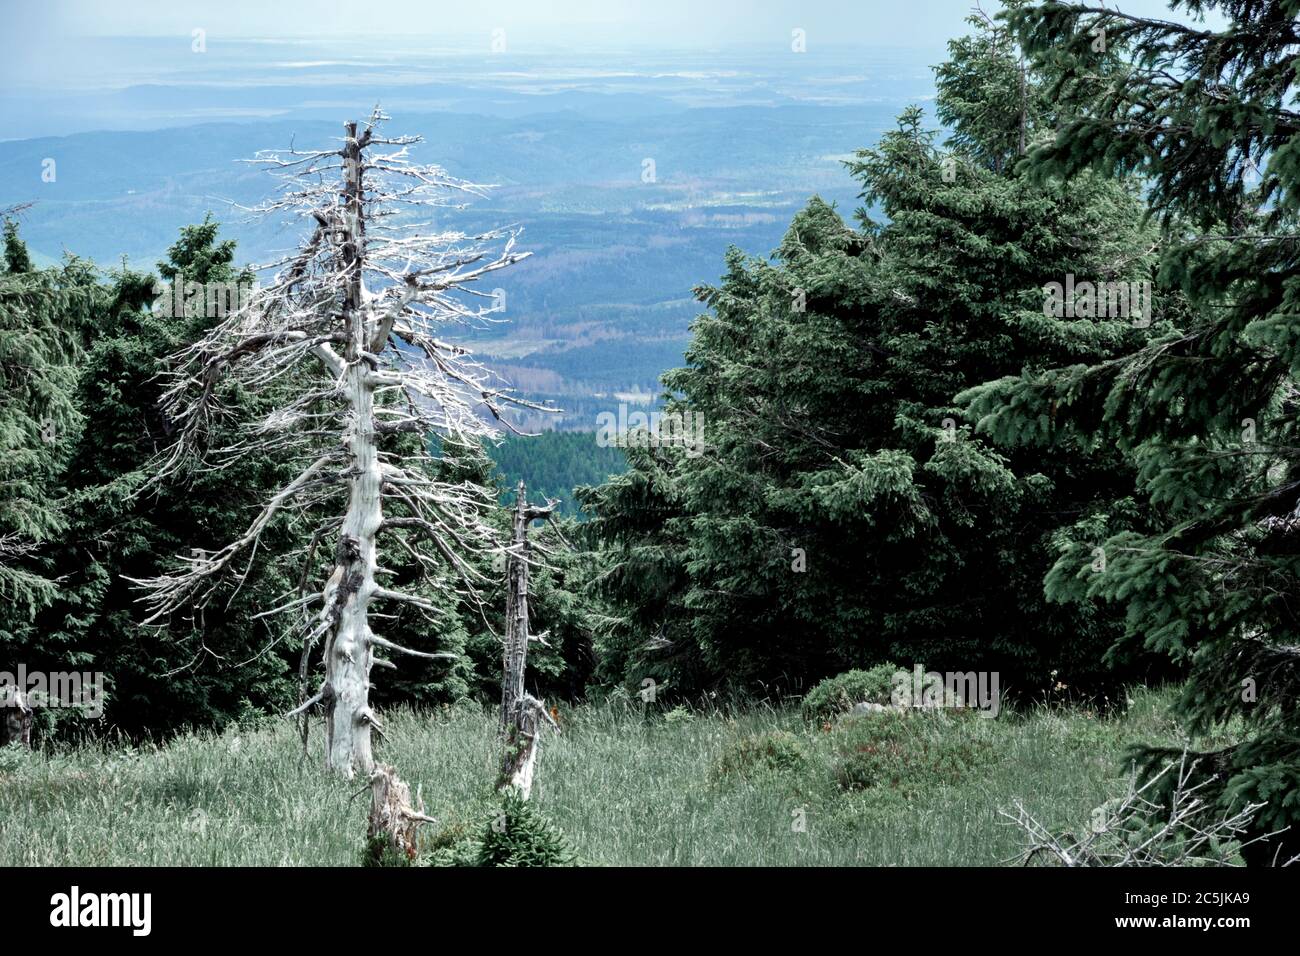 Un unico abete bianco intemperie si estende sui rami morti ai margini della foresta di conifere a Brocken. Foto Stock